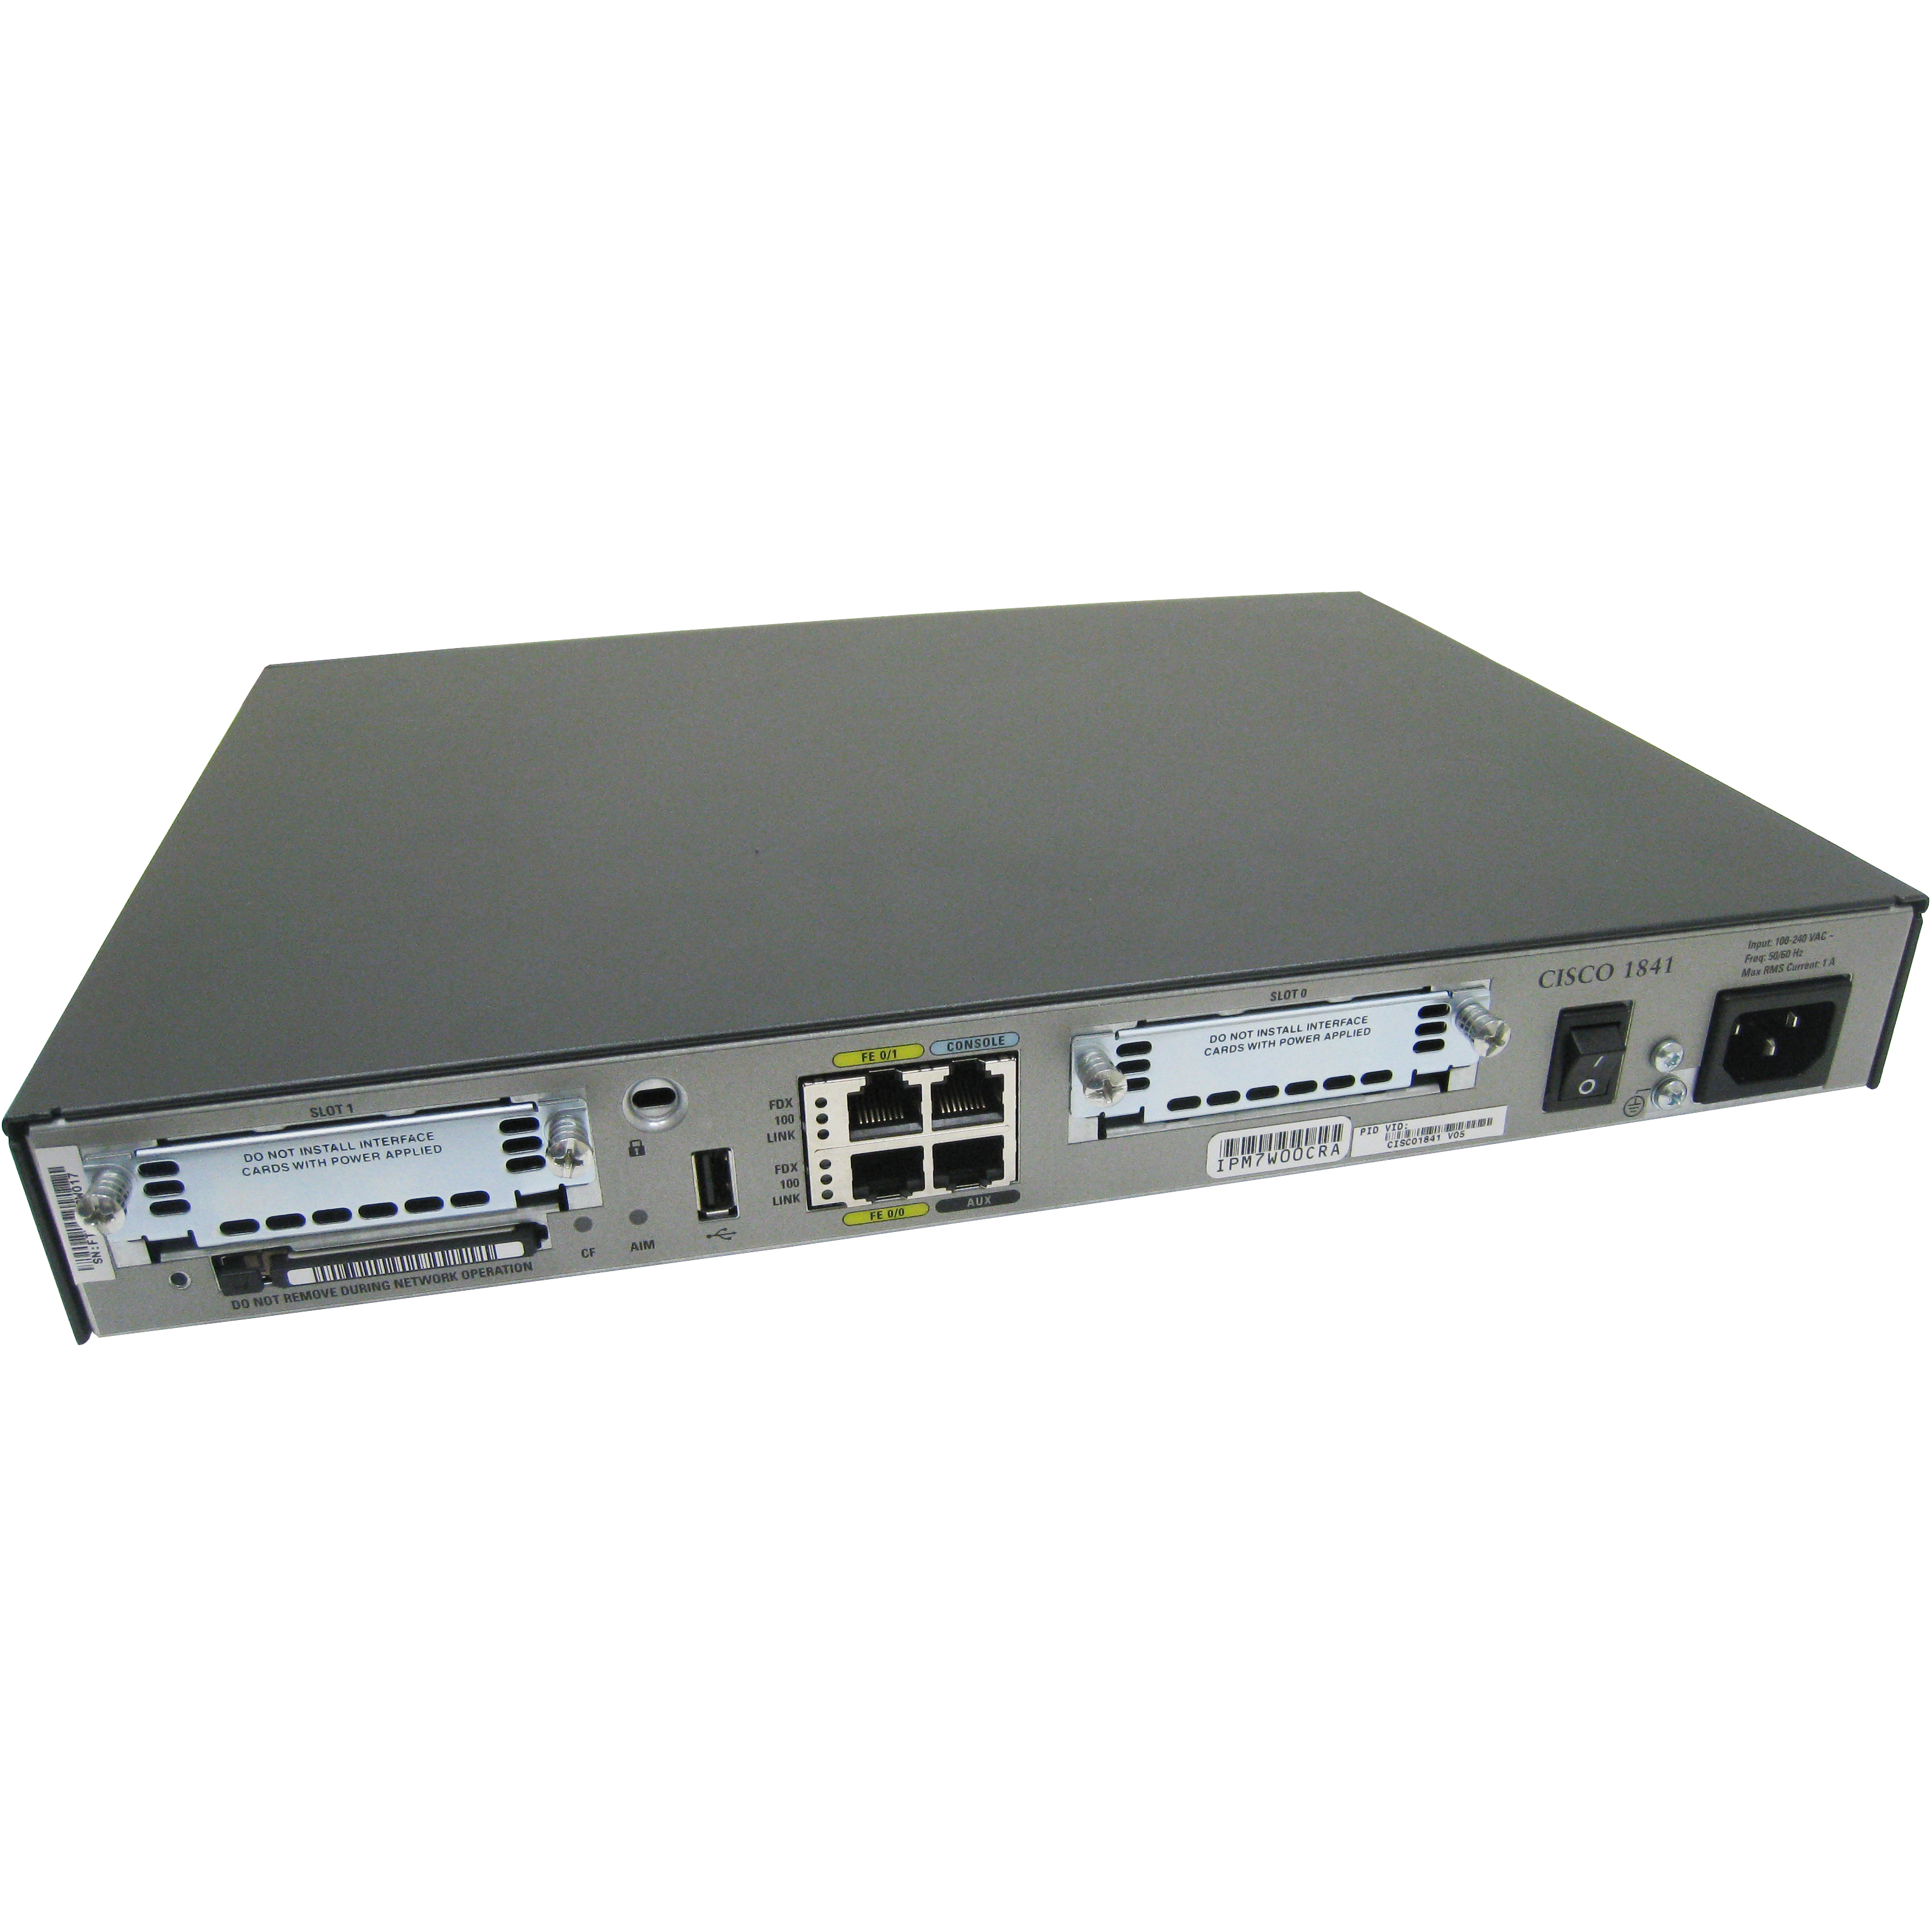 Cisco CISCO1841-ADSL2